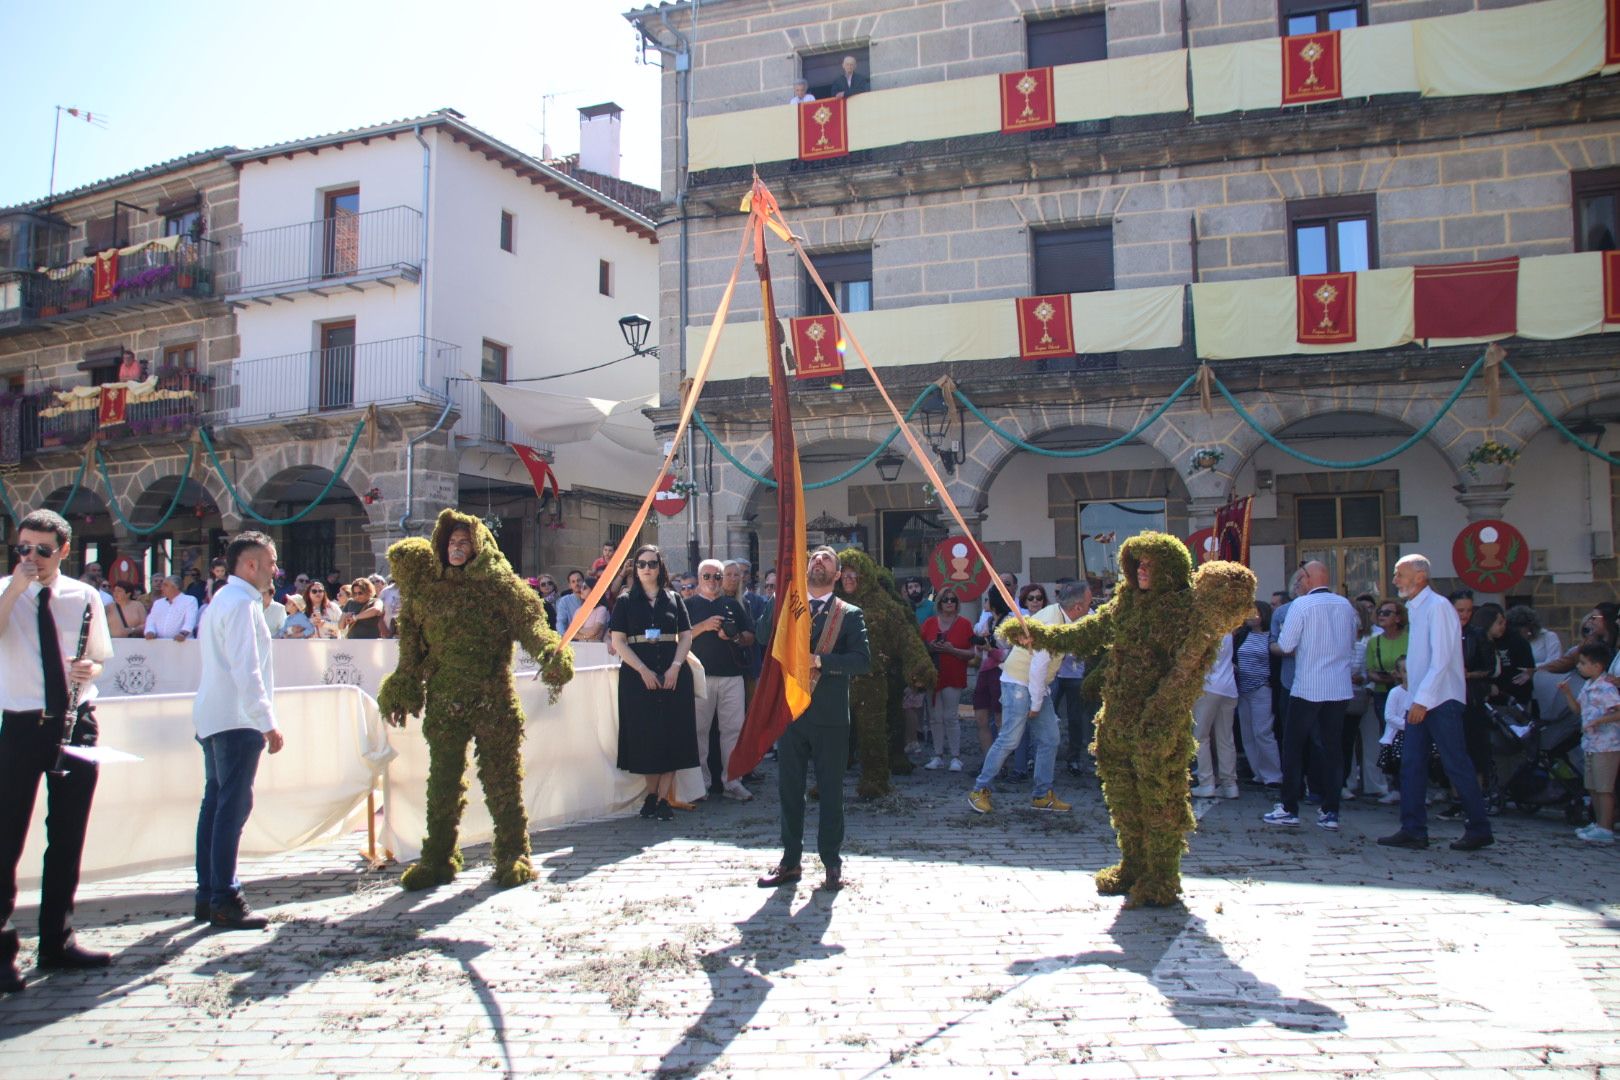  La procesión del Corpus Christi con los hombres de musgo en Béjar.